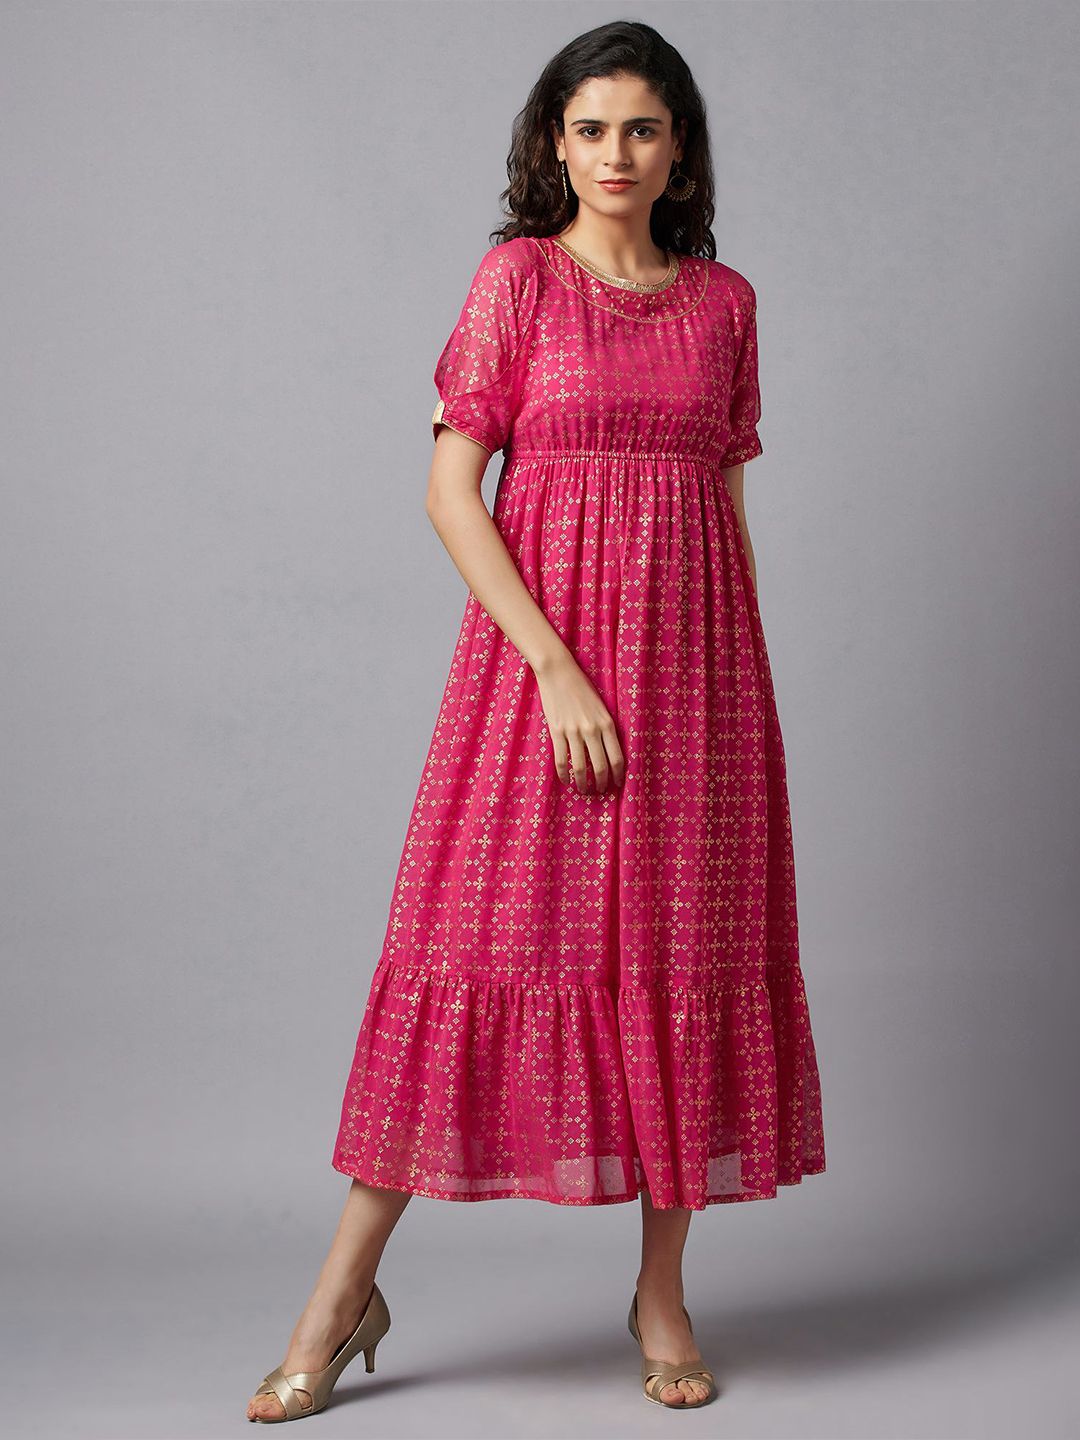 AURELIA Fuchsia & Gold-Toned Ethnic Motifs Ethnic Midi Dress Price in India